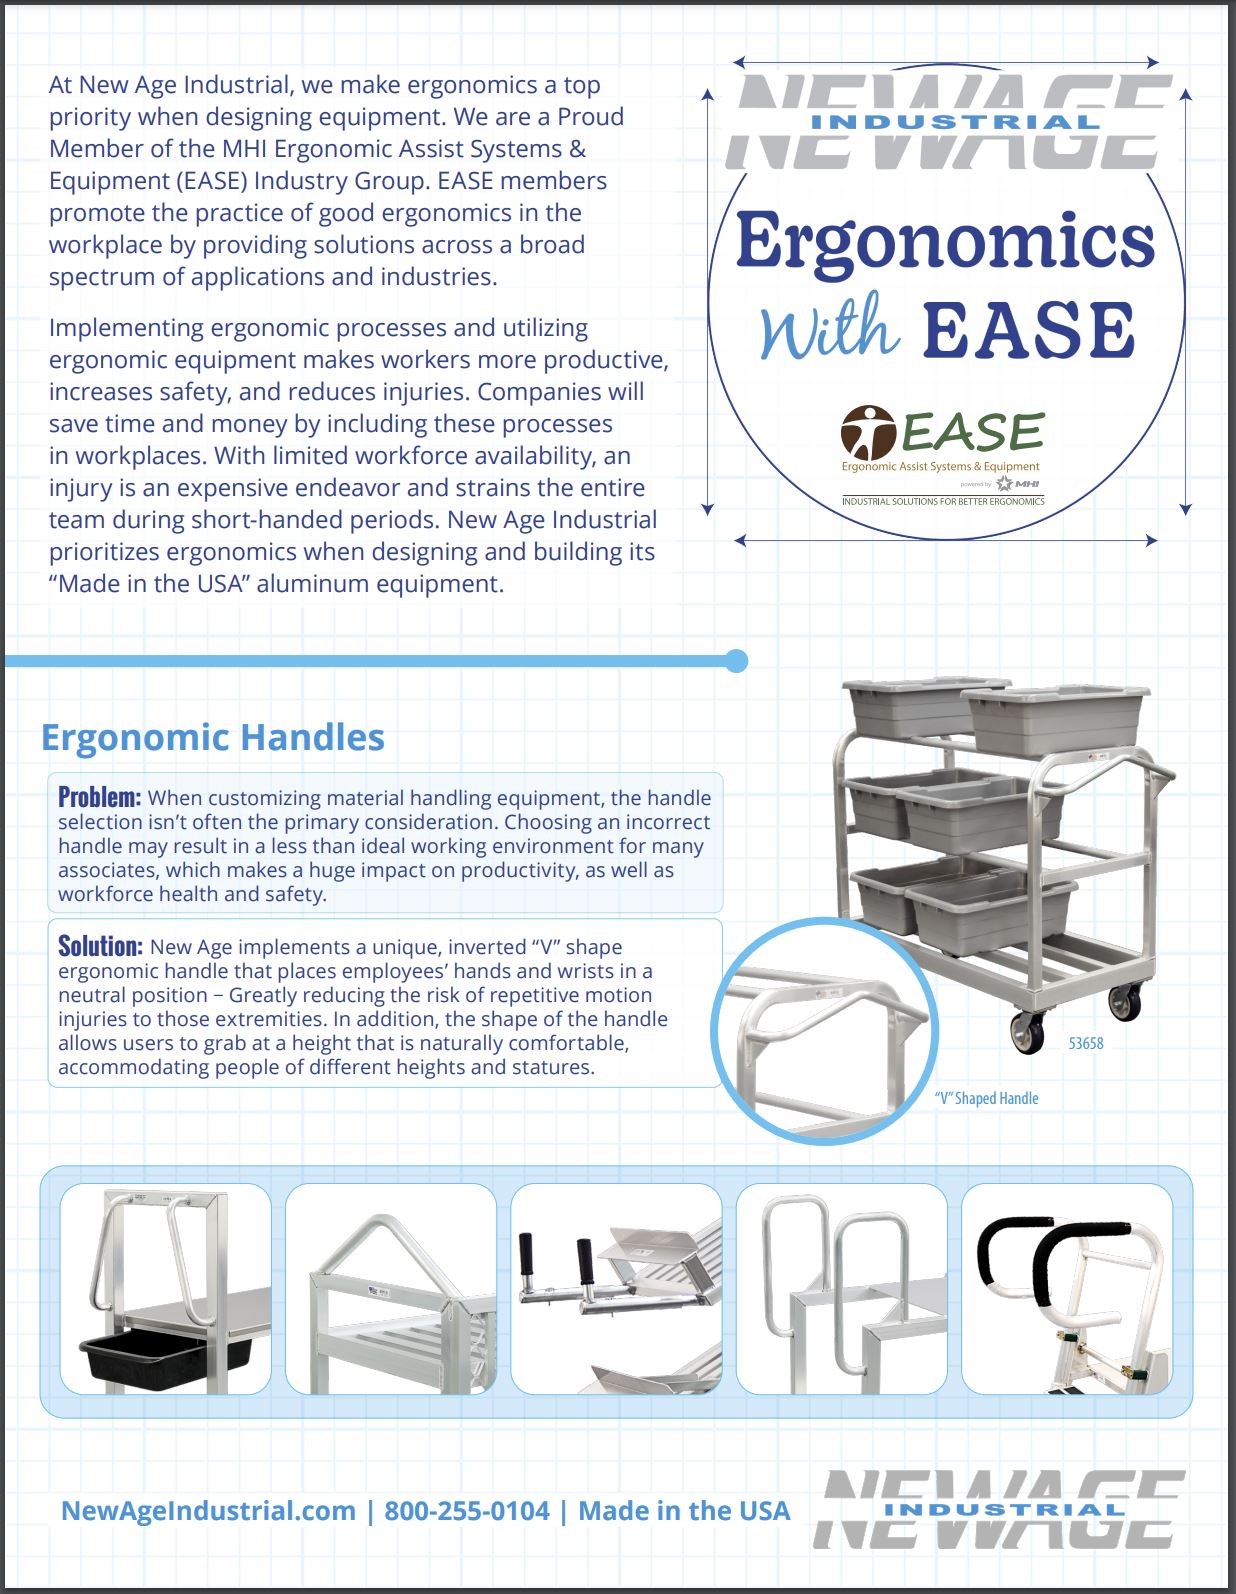 Ergonomics with EASE